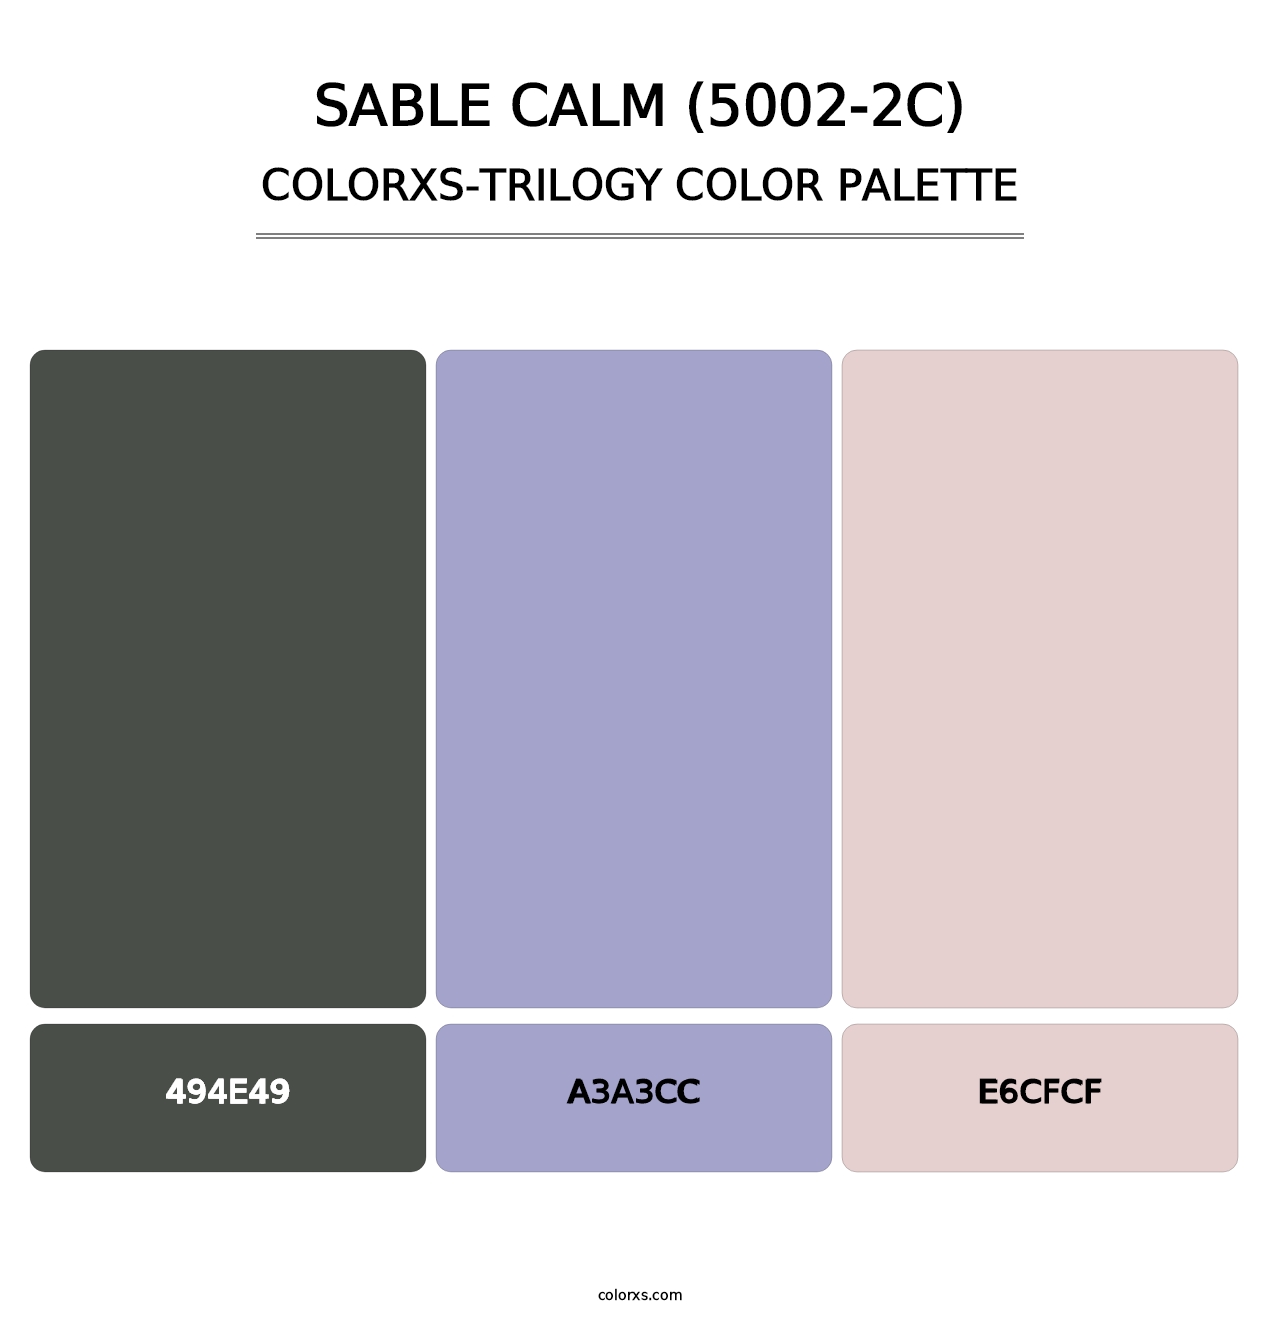 Sable Calm (5002-2C) - Colorxs Trilogy Palette